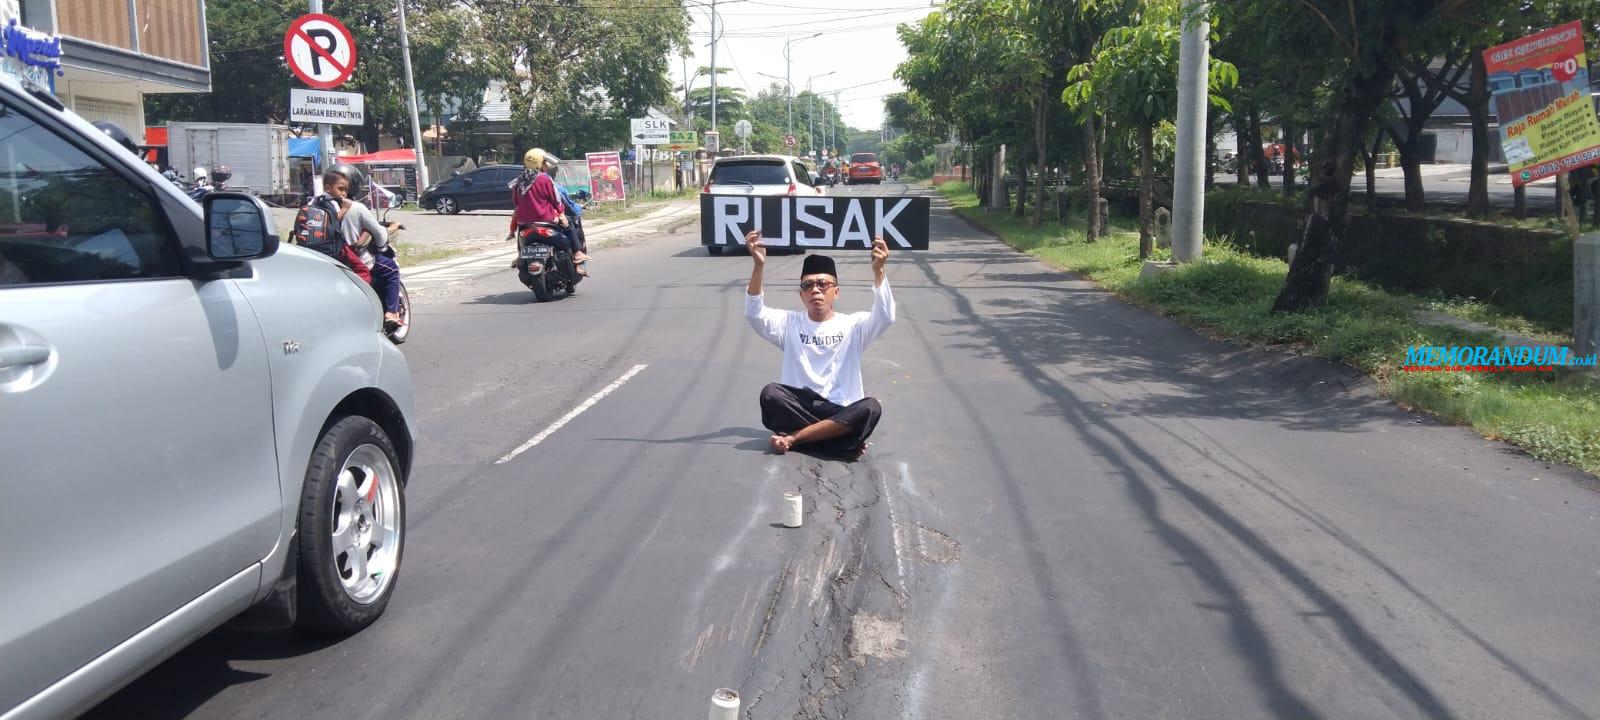 Jalan Rusak, Seniman Protes Pemkot Surabaya